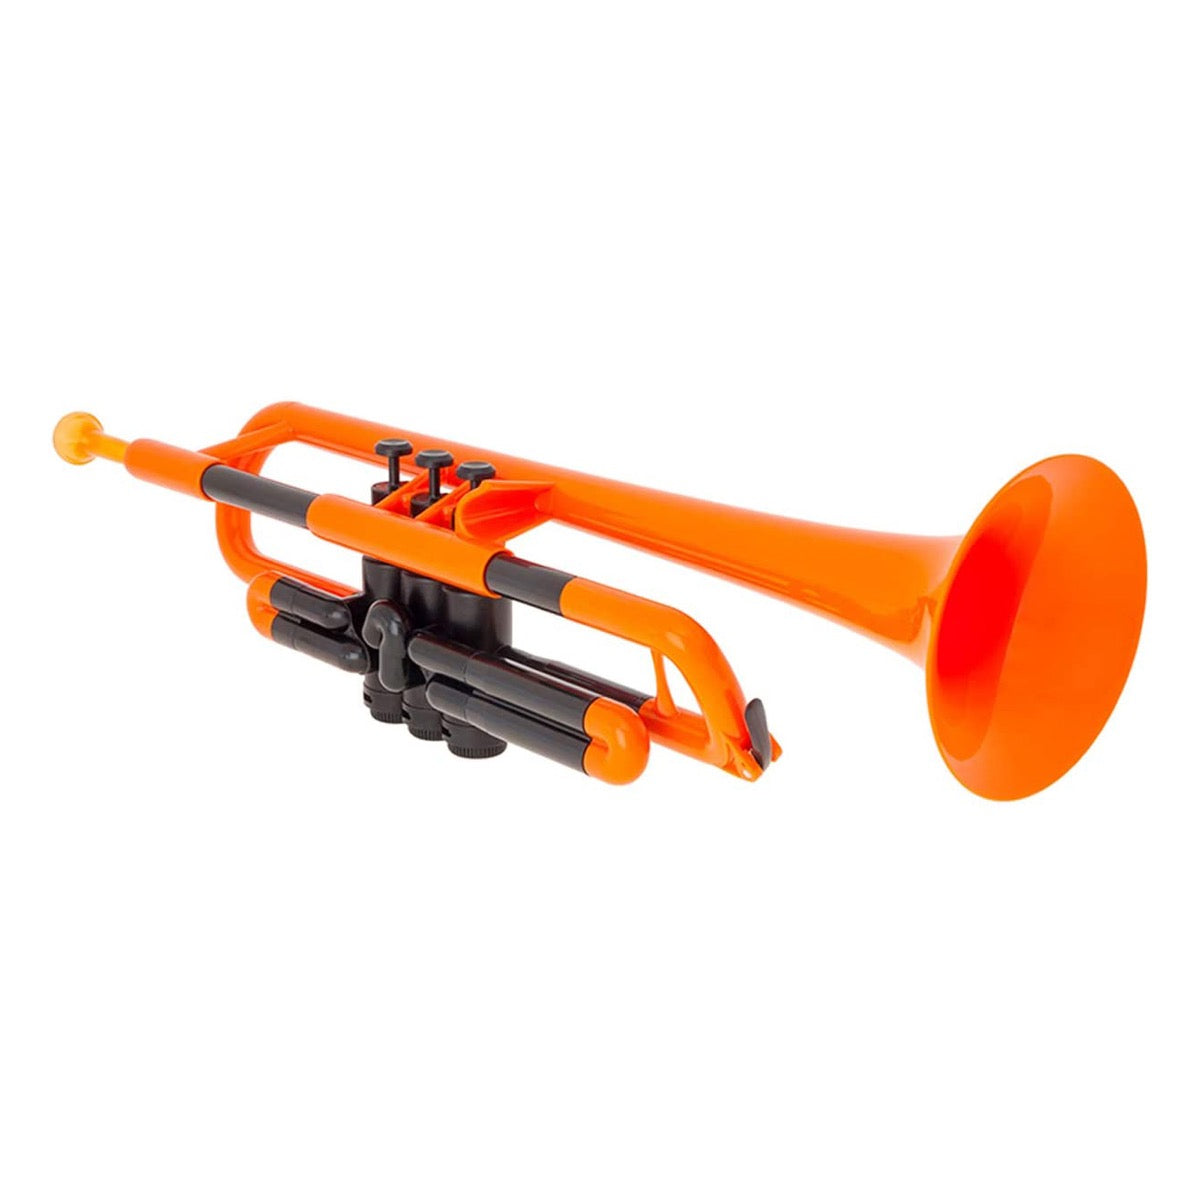 Jiggs pTrumpet Plastic Trumpet 2.0 - Orange